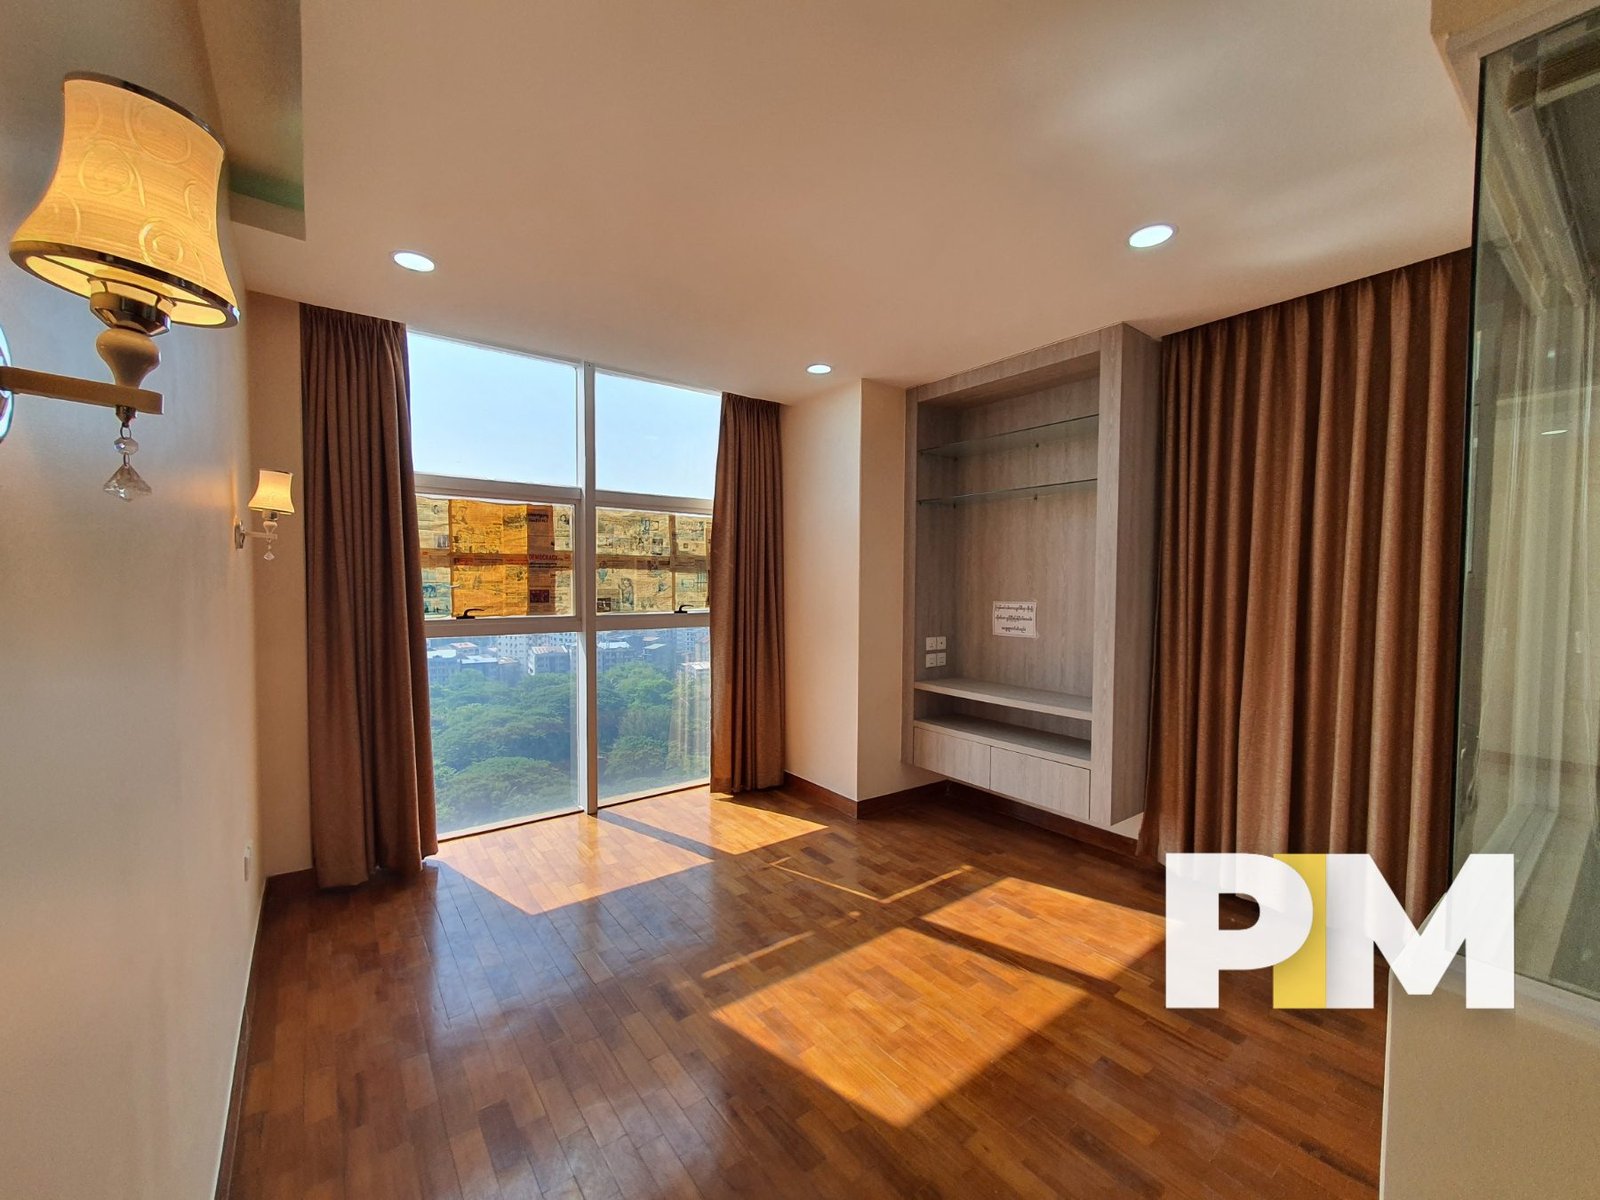 Bedroom view - Yangon Real Estate